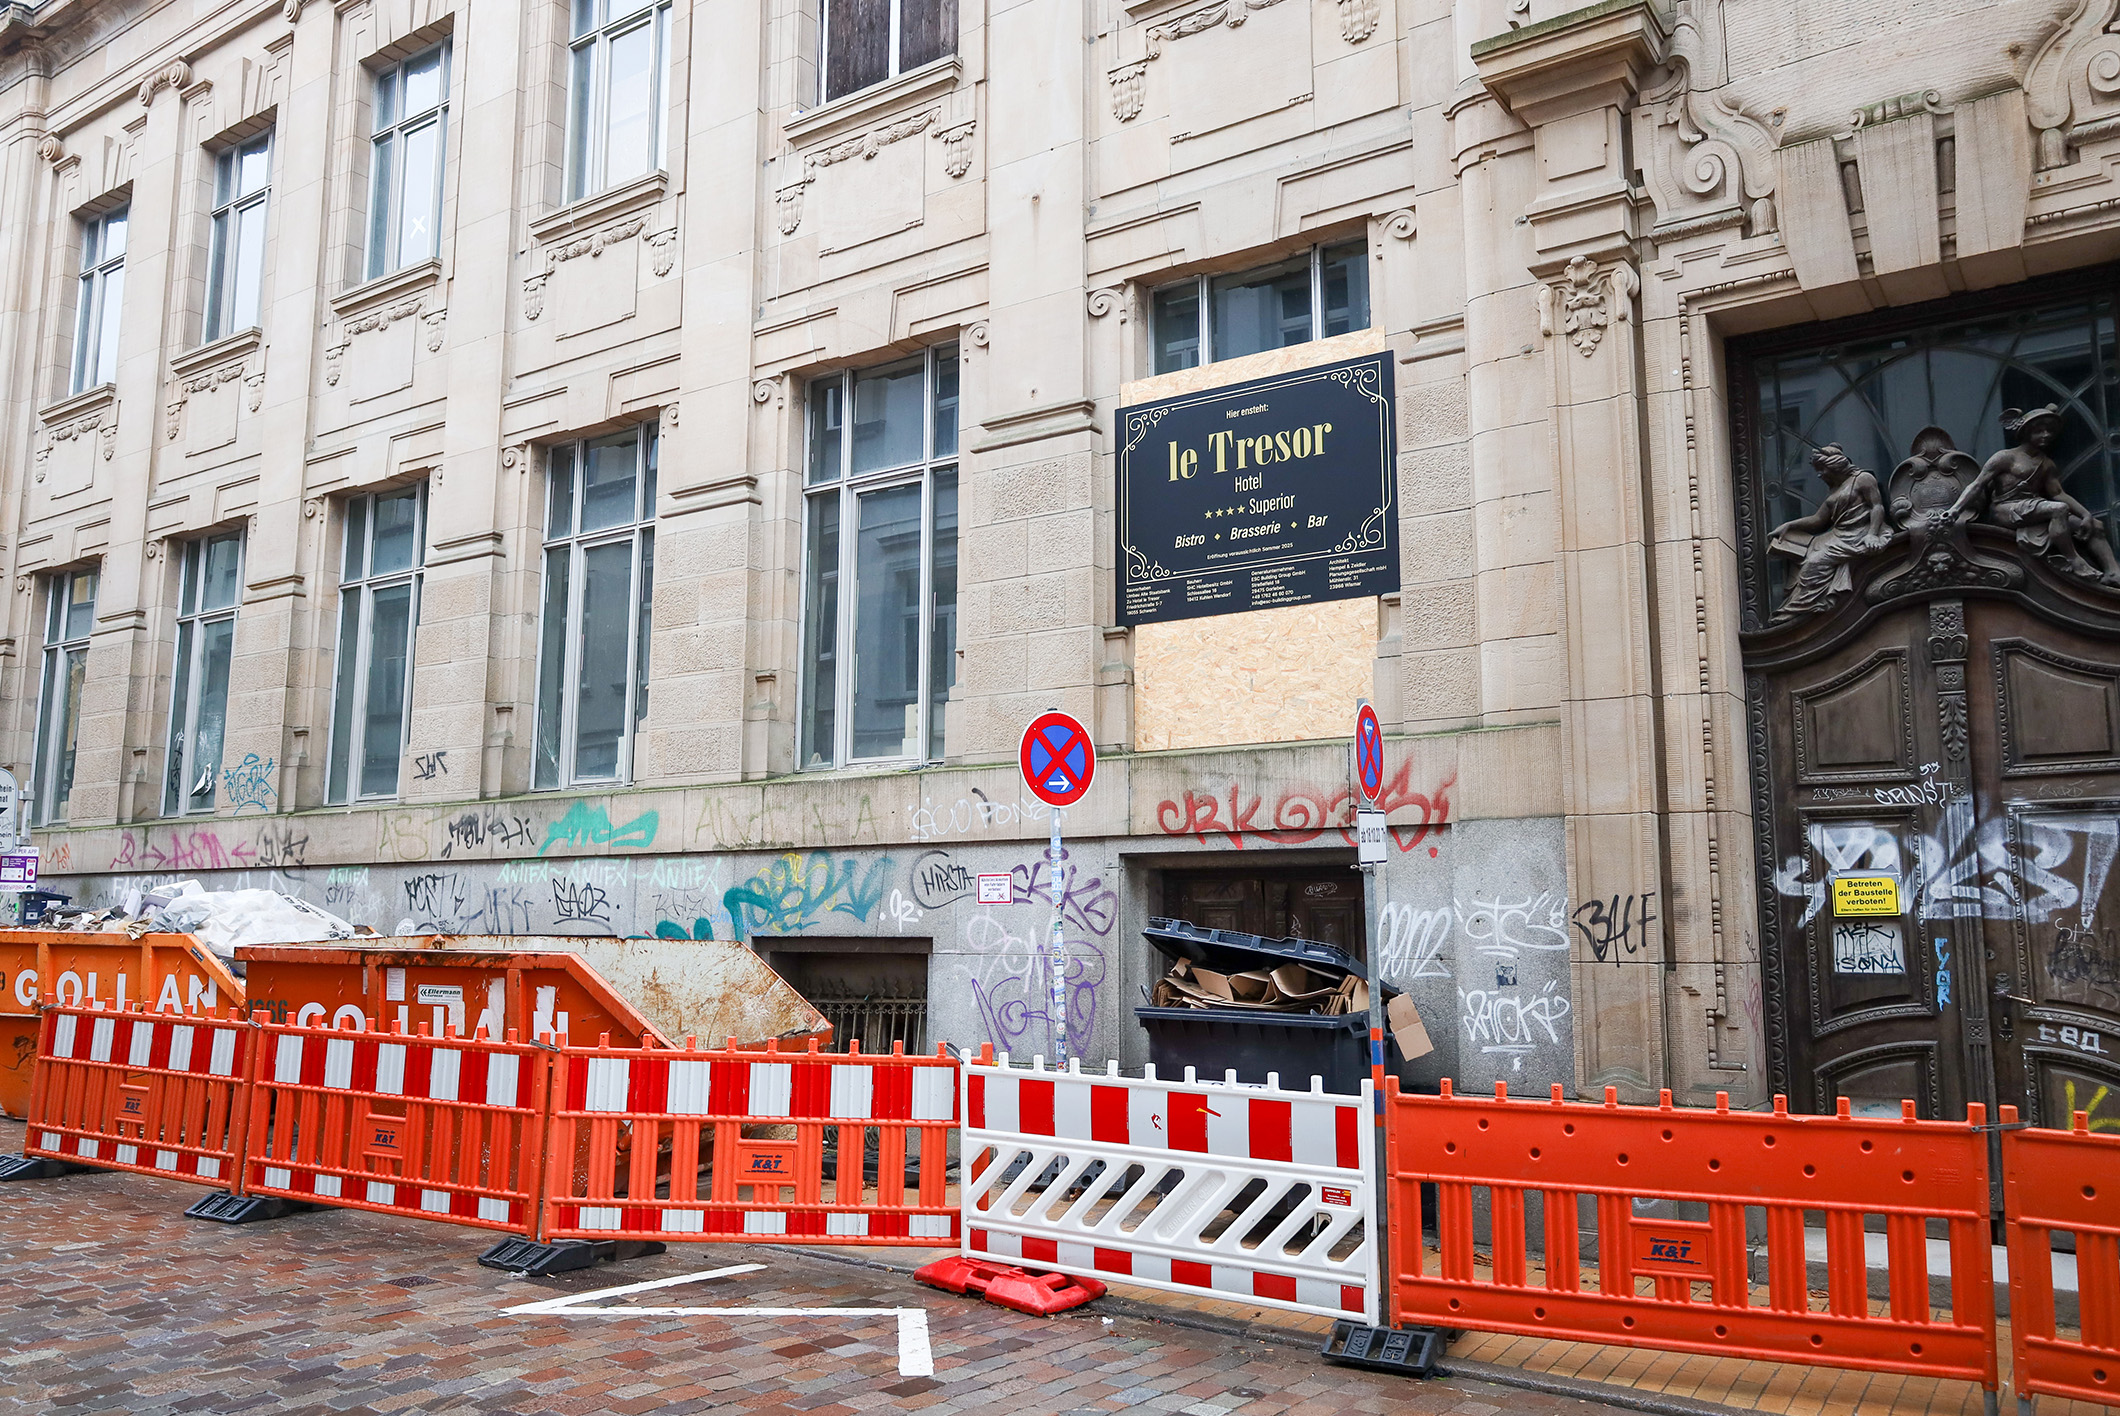 Ein Hauch von Luxus zieht in die alte Staatsbank in der Friedrichstraße ein. „Le Trésor“ heißt das Vier-Sterne-Hotel, das dort im Sommer 2025 eröffnen soll und die Thematik des Geldhauses aufgreift.